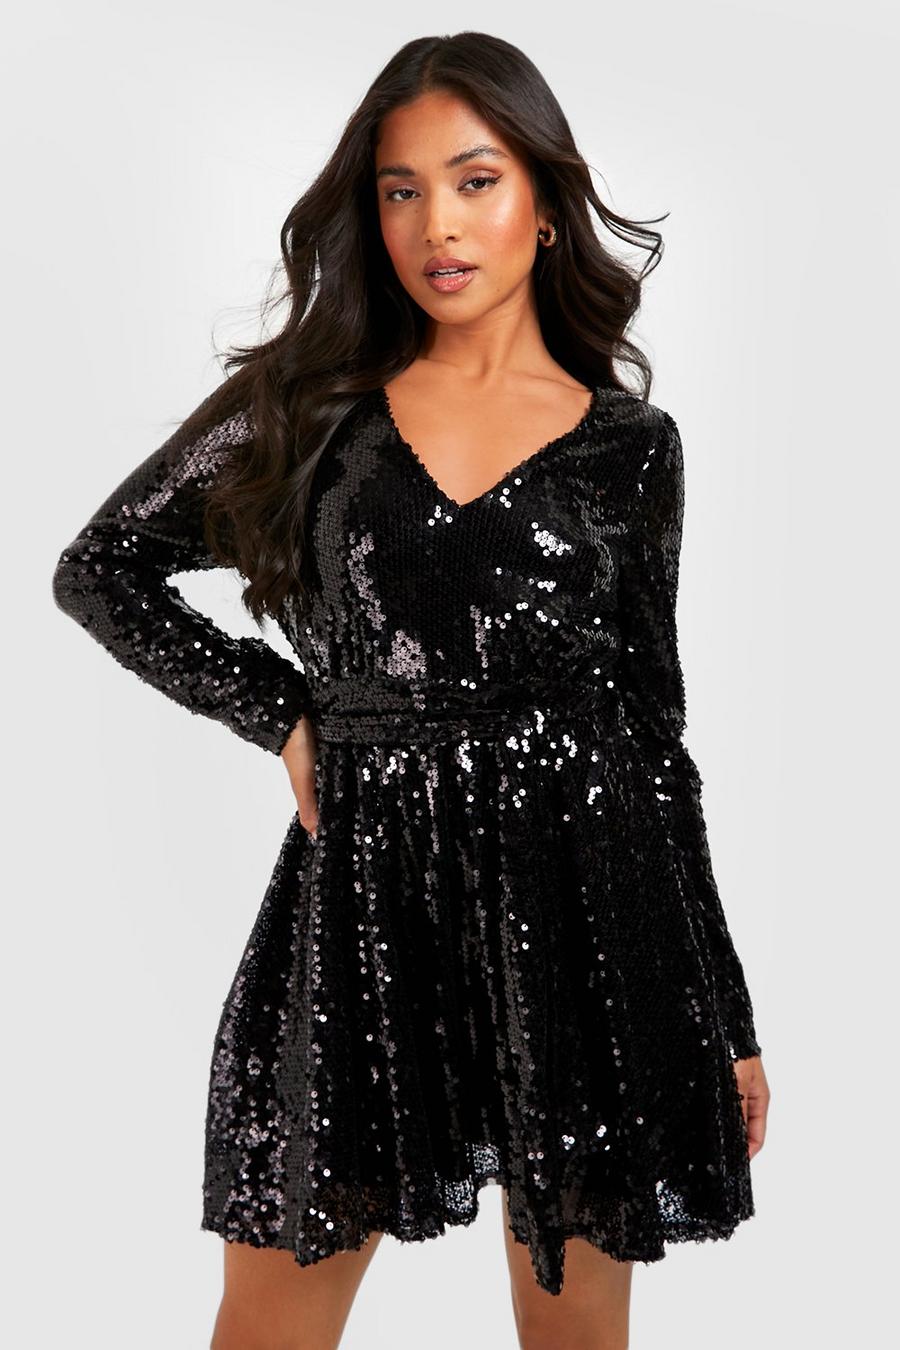 שחור שמלת סקייטר מעטפת עם פייטים וחגורה למידות פטיט